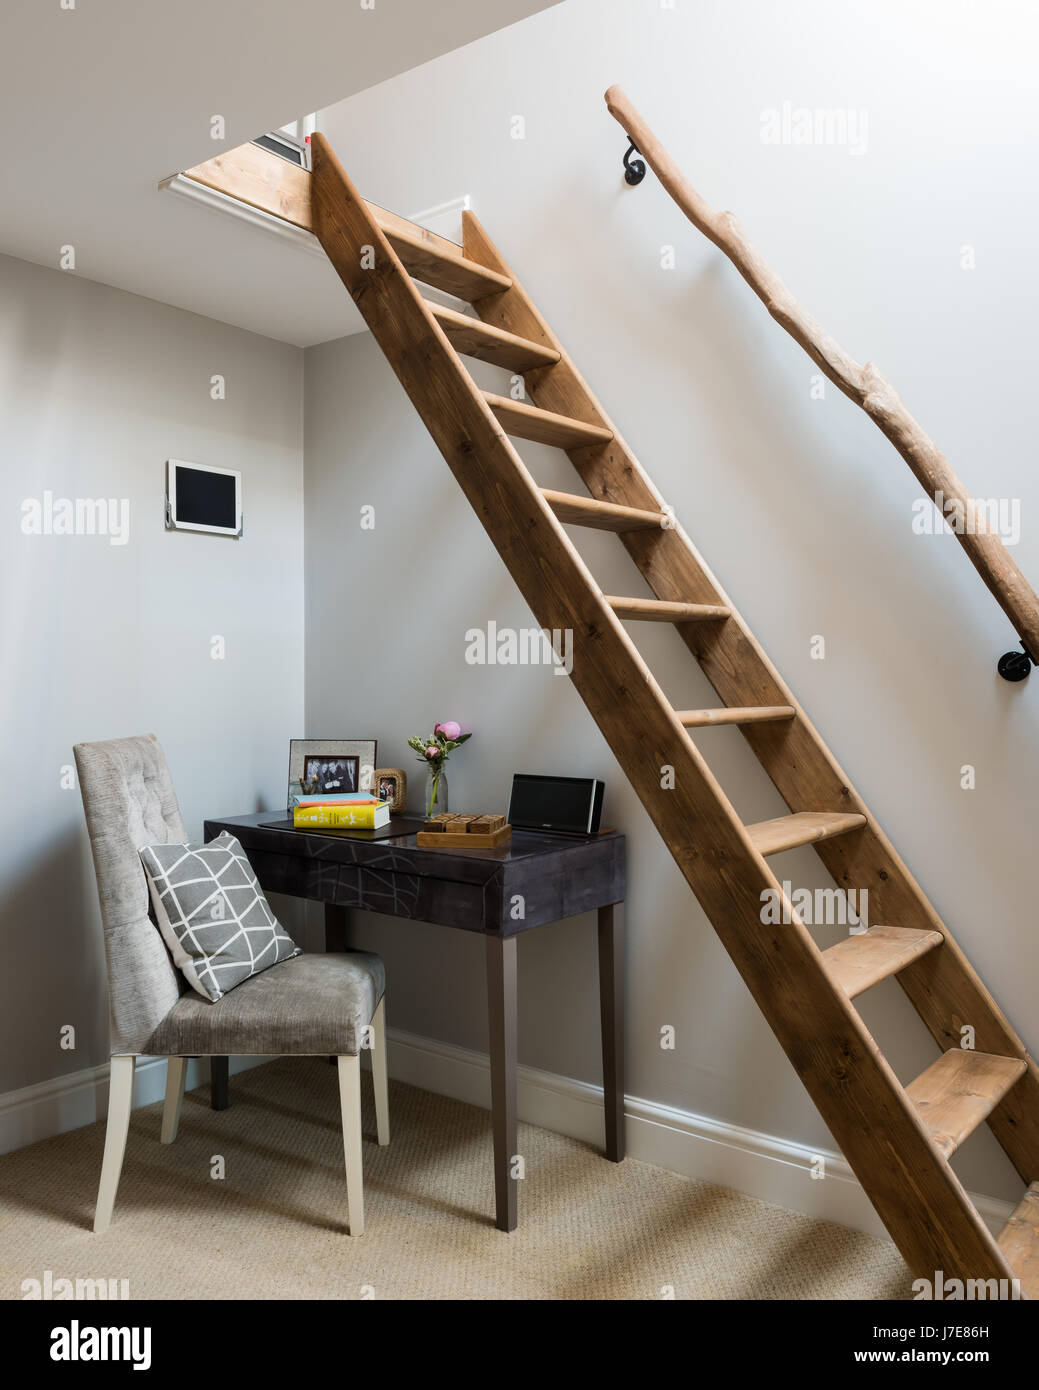 Studieren Sie mit Holzleiter und rustikalen Handlauf Raum Loft  Stockfotografie - Alamy